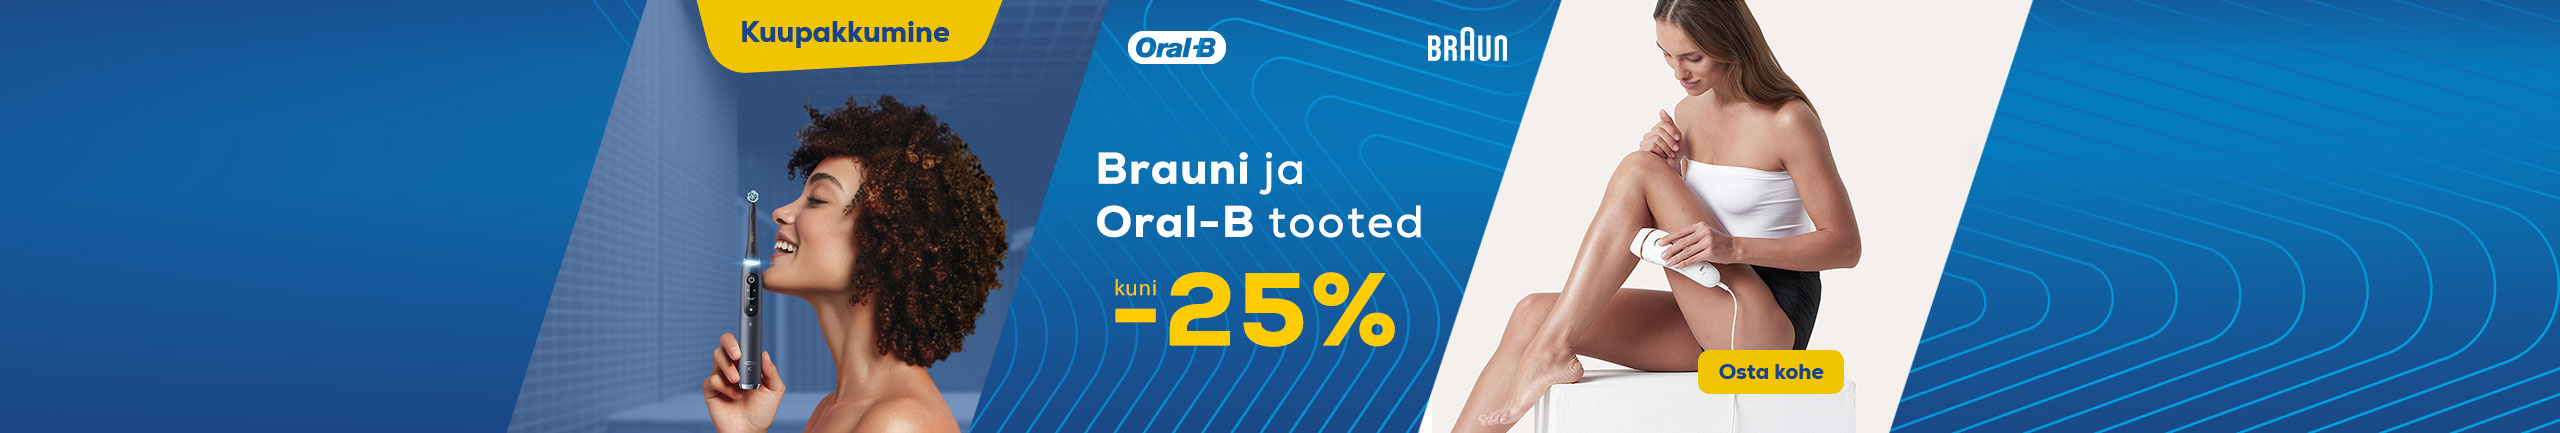 Brauni ja Oral-B tooted kuni -25%